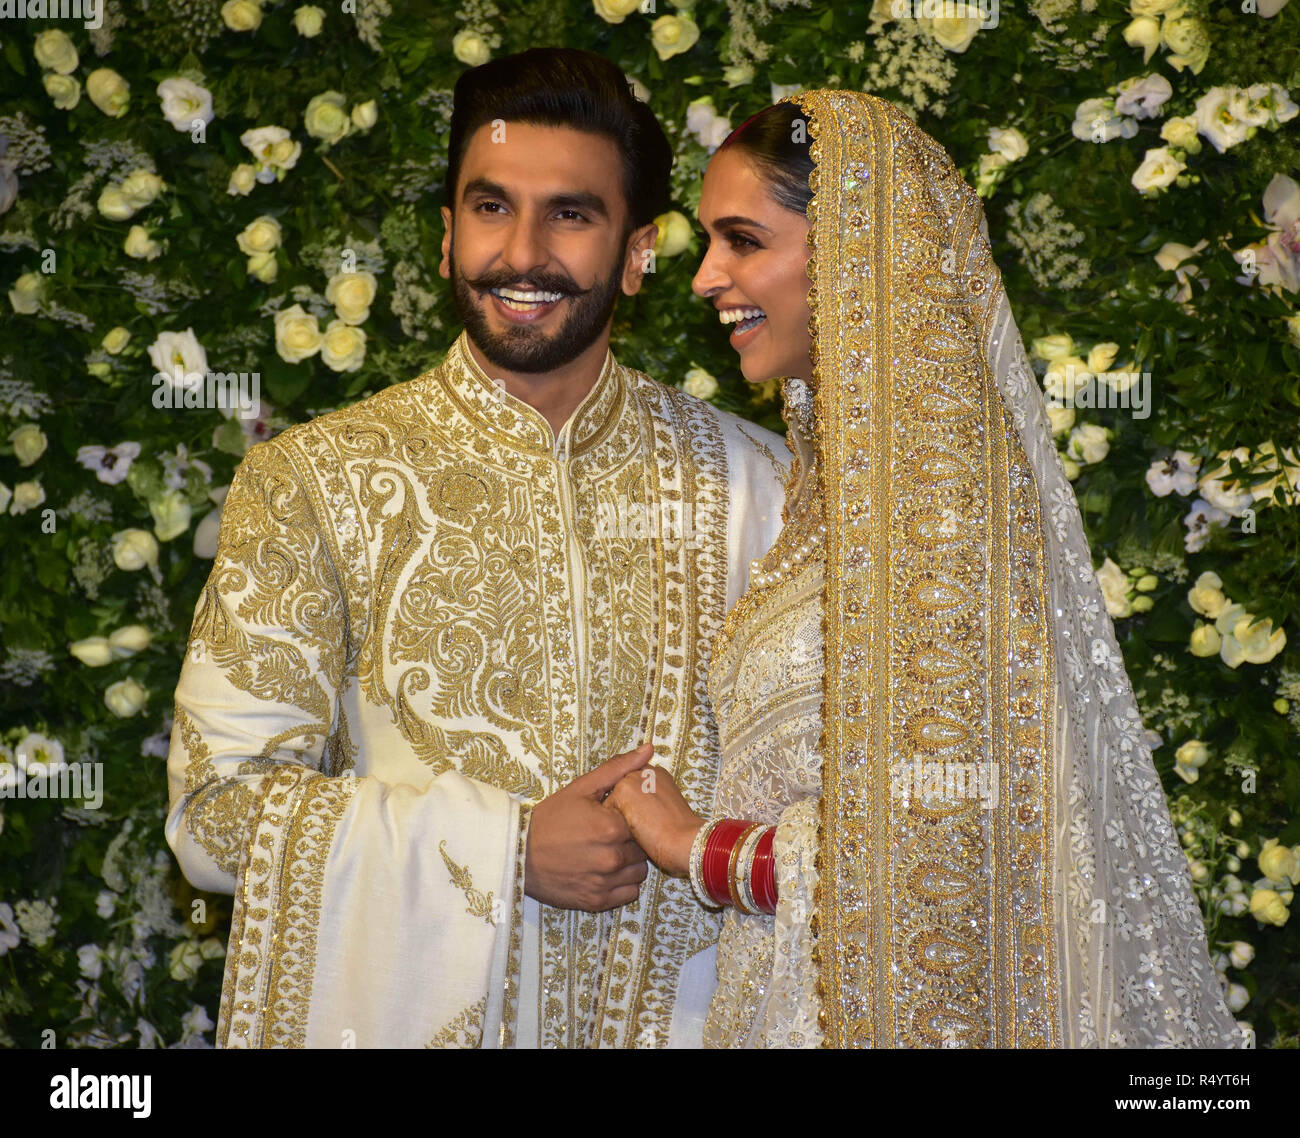 Deepika Padukone, Ranveer Singh's wedding date out - The Statesman